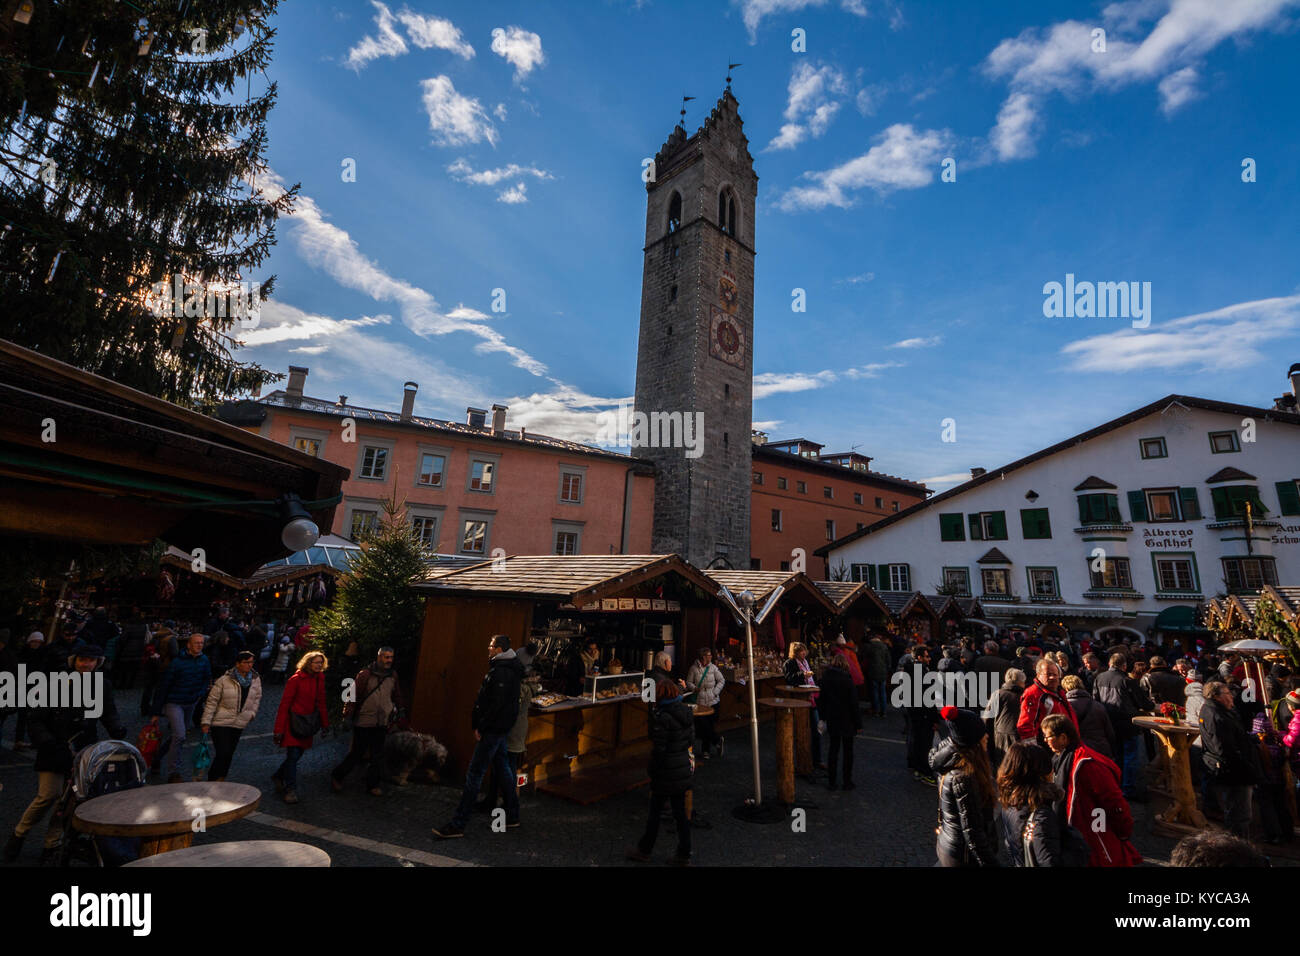 Christmas Market, Vipiteno, Sterzing, Bolzano, Trentino Alto Adige, Italy Stock Photo